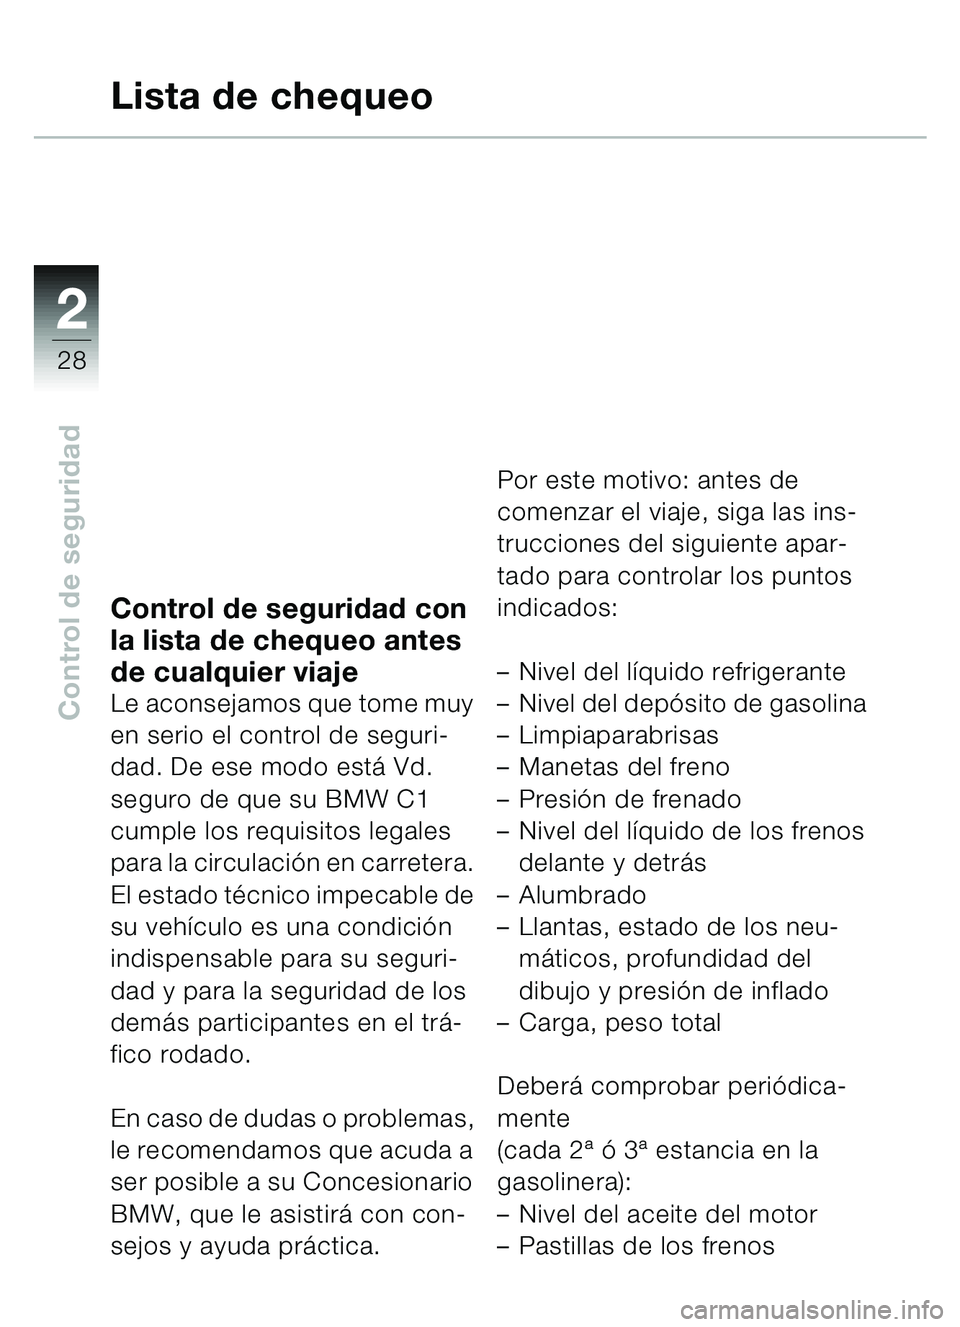 BMW MOTORRAD C1 2000  Manual de instrucciones (in Spanish) 2
28
Control de seguridad
Control de seguridad con 
la lista de chequeo antes 
de cualquier viaje
Le aconsejamos que tome muy 
en serio el control de seguri-
dad. De ese modo está Vd. 
seguro de que 